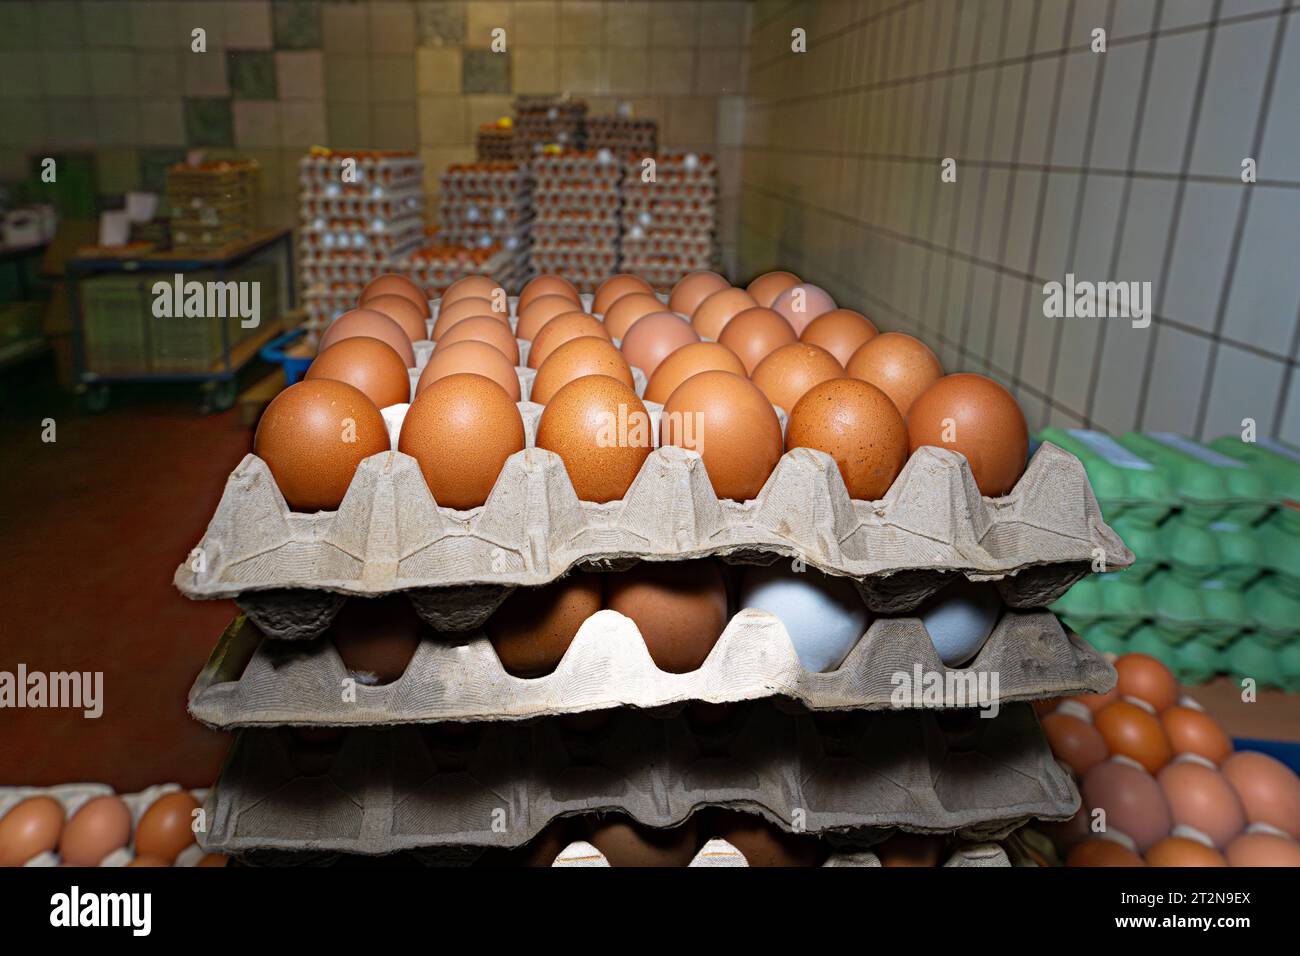 Erzeugung von Hühnereiern, gekühlter Lagerraum mit vielen gestapelten Eierkartons - Symbolfoto. Besuch bei einem Direktvermarkter von frischen Hühnereiern. Die Hühner werden teilweise in einem Hühnermobil aber auch in einem großräumig umgebauten Freilandstall gehalten und haben tagsüber viel Auslauf auf umliegenden Weideflächen. Einblick gibt es auch in den mobilen Hühnerstall und der Verpackung der frisch gelegten Eier per Handarbeit. Raum Minden-Lübbecke NRW Deutschland *** Production of chicken eggs, refrigerated storage room with many stacked egg cartons symbol photo Visit to a direct mark Stock Photo